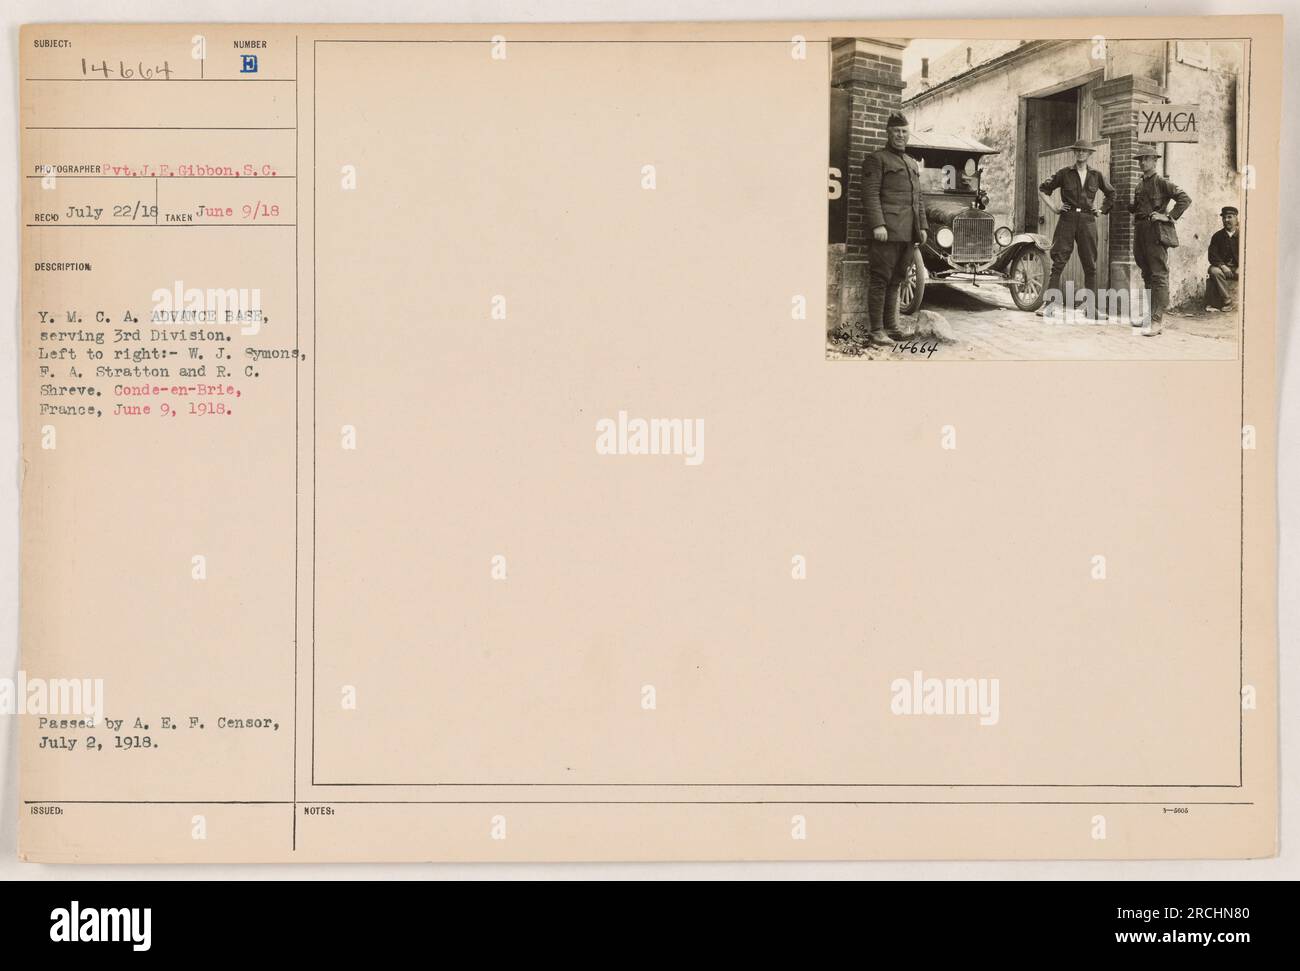 Y.M.C.A. personale della base avanzata, al servizio della 3a Divisione, a Conde-en-Brie, Francia. Da sinistra a destra: W.J. Symons, P.A. Stratton e R.C. Shreve. La foto è stata scattata il 9 giugno 1918 da Pyt. E. Gibbon e 8,0. Redd. È stato pubblicato e approvato dalla A.E.F. censor il 2 luglio 1918. Foto Stock